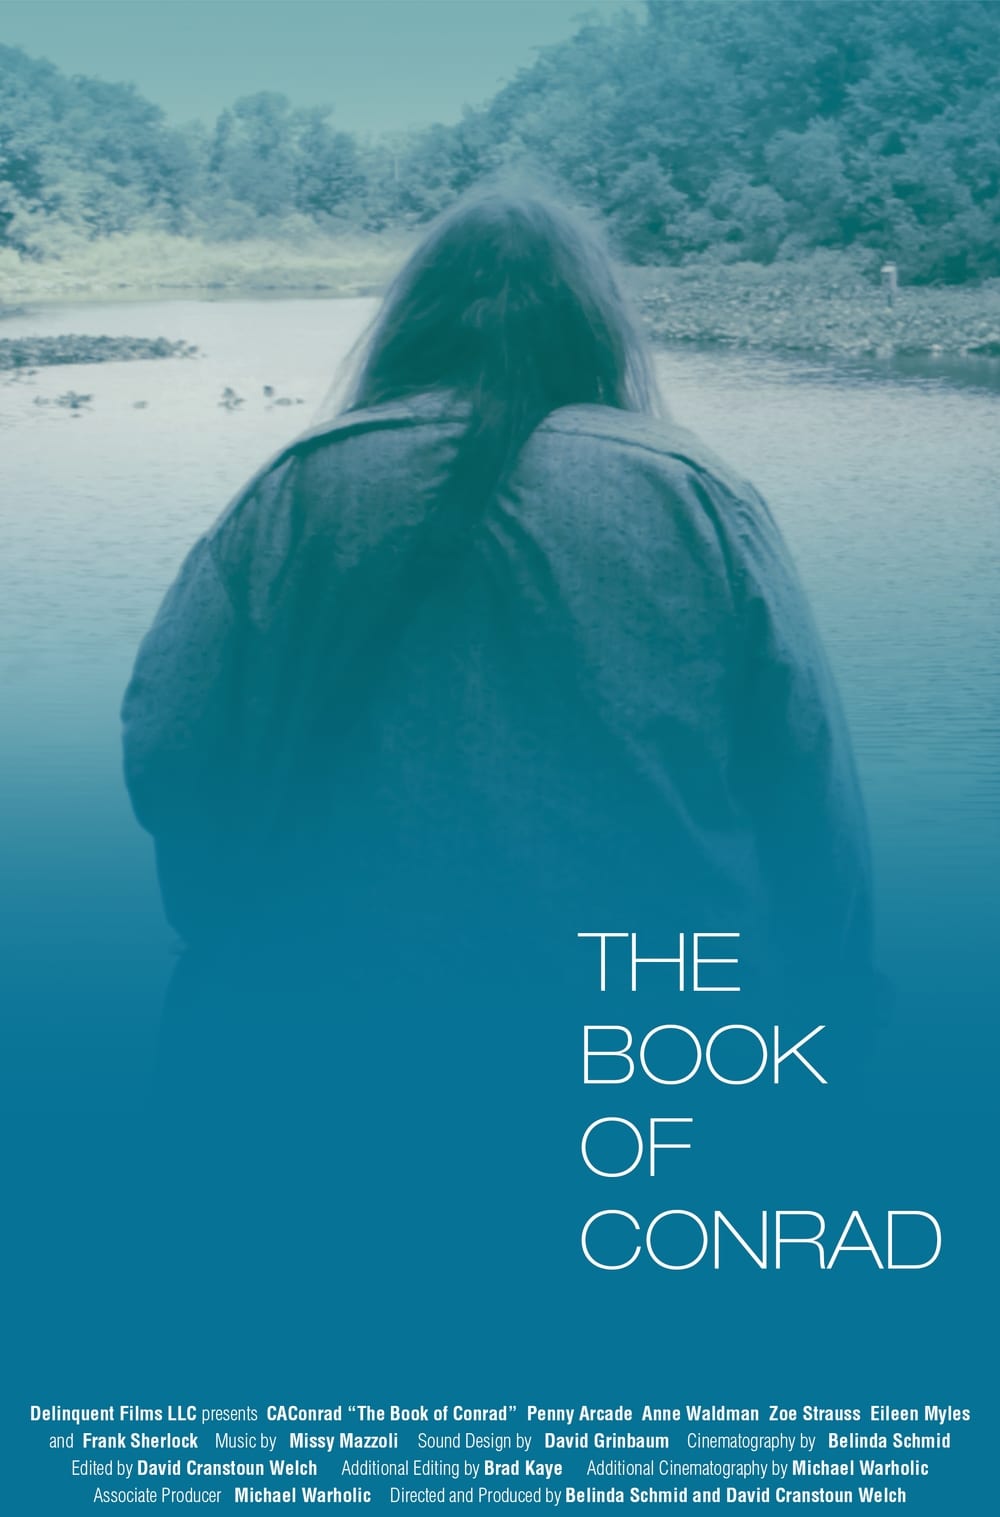 The Book of Conrad